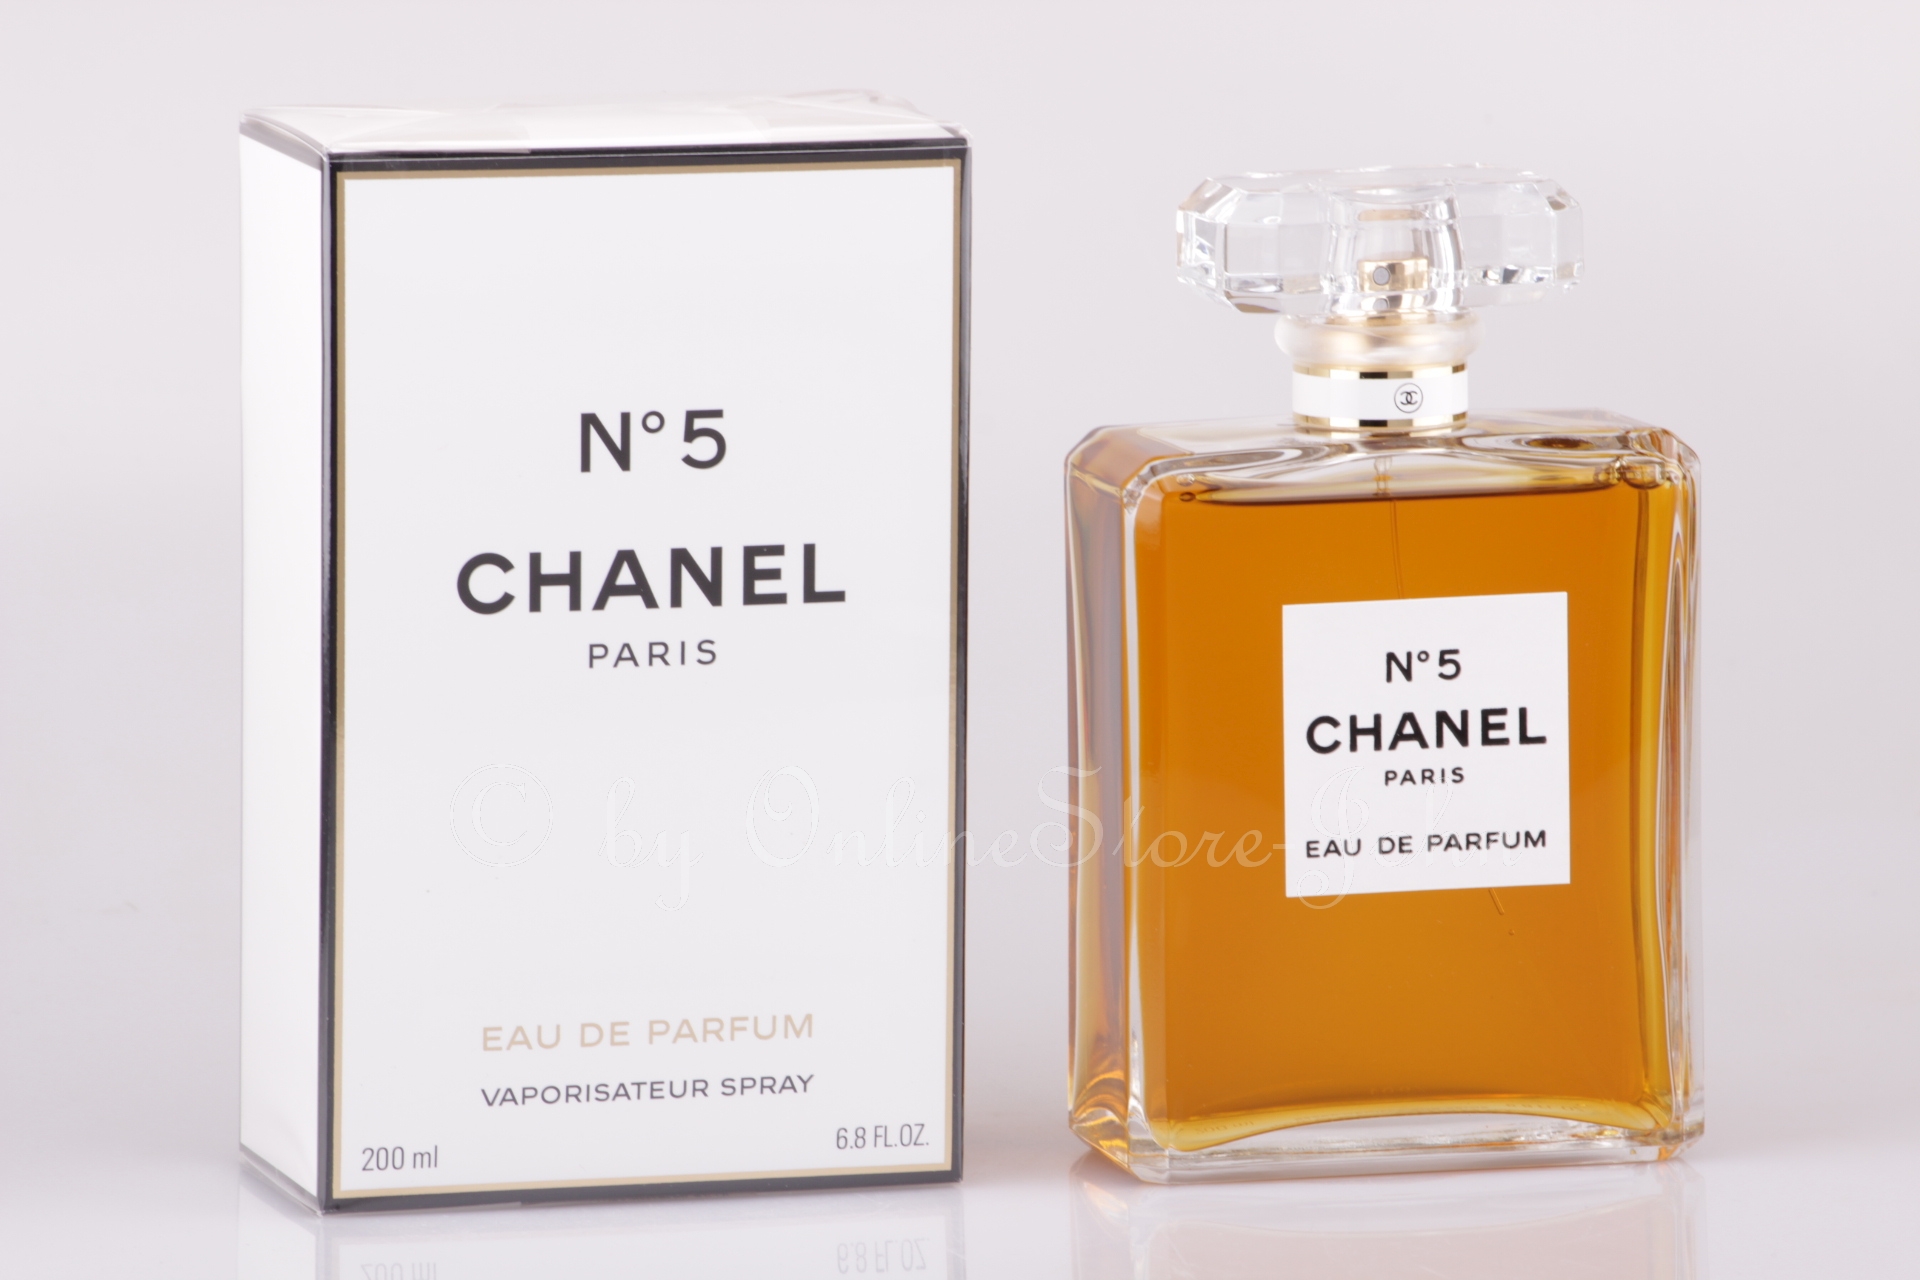 Parfum Chanel No 5 Gunstig Kaufen The Art Of Mike Mignola